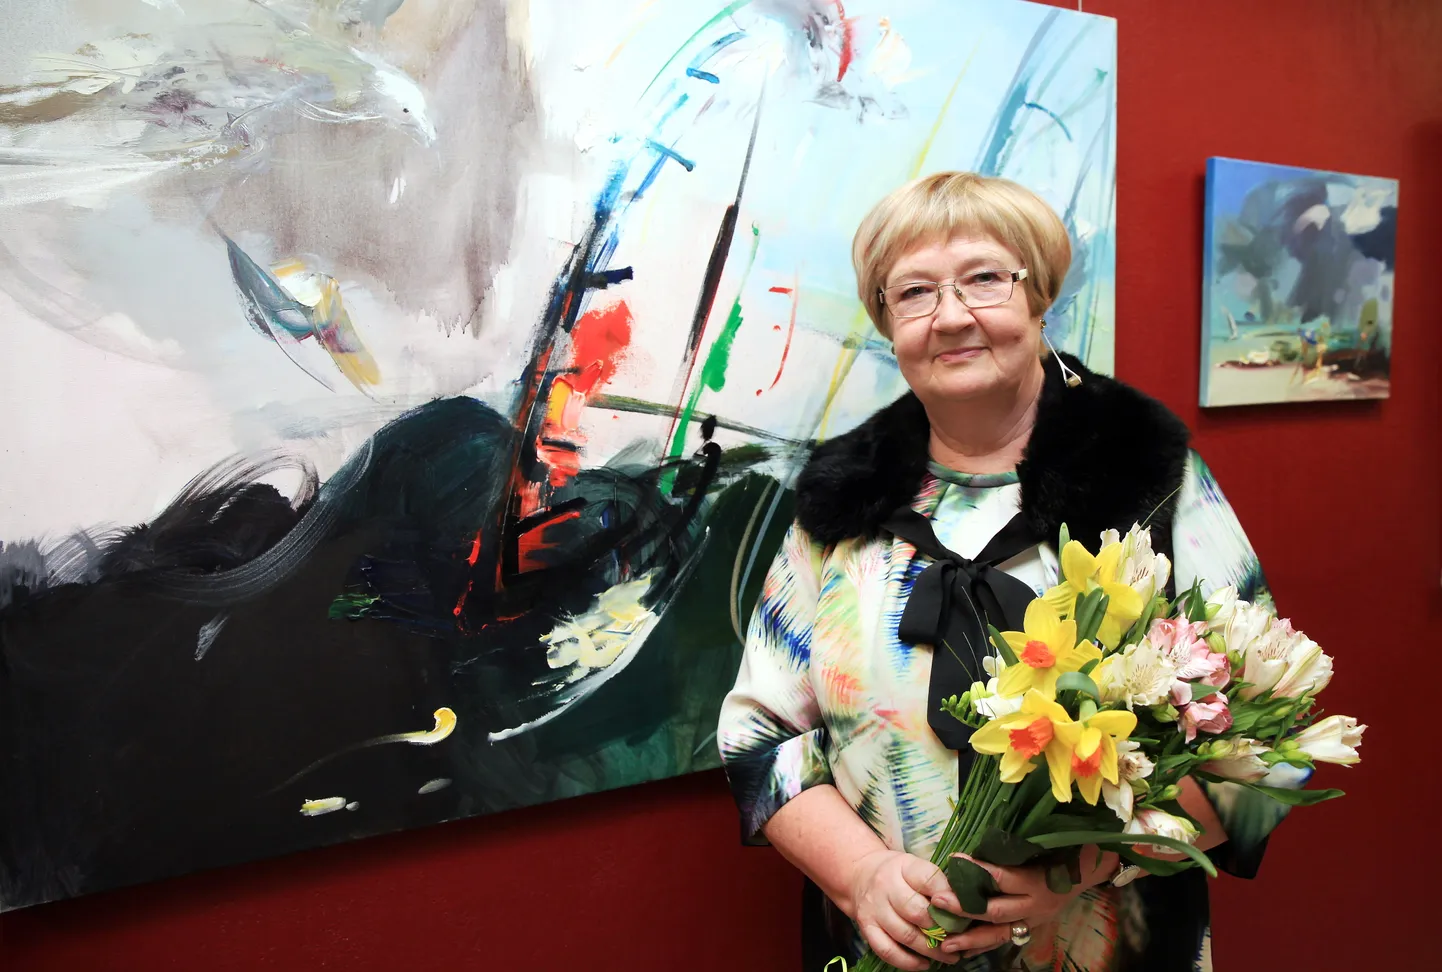 Māksliniece Anita Meldere savas izstādes "Vasaras laiks" atklāšanā galerijā "Pegazs".